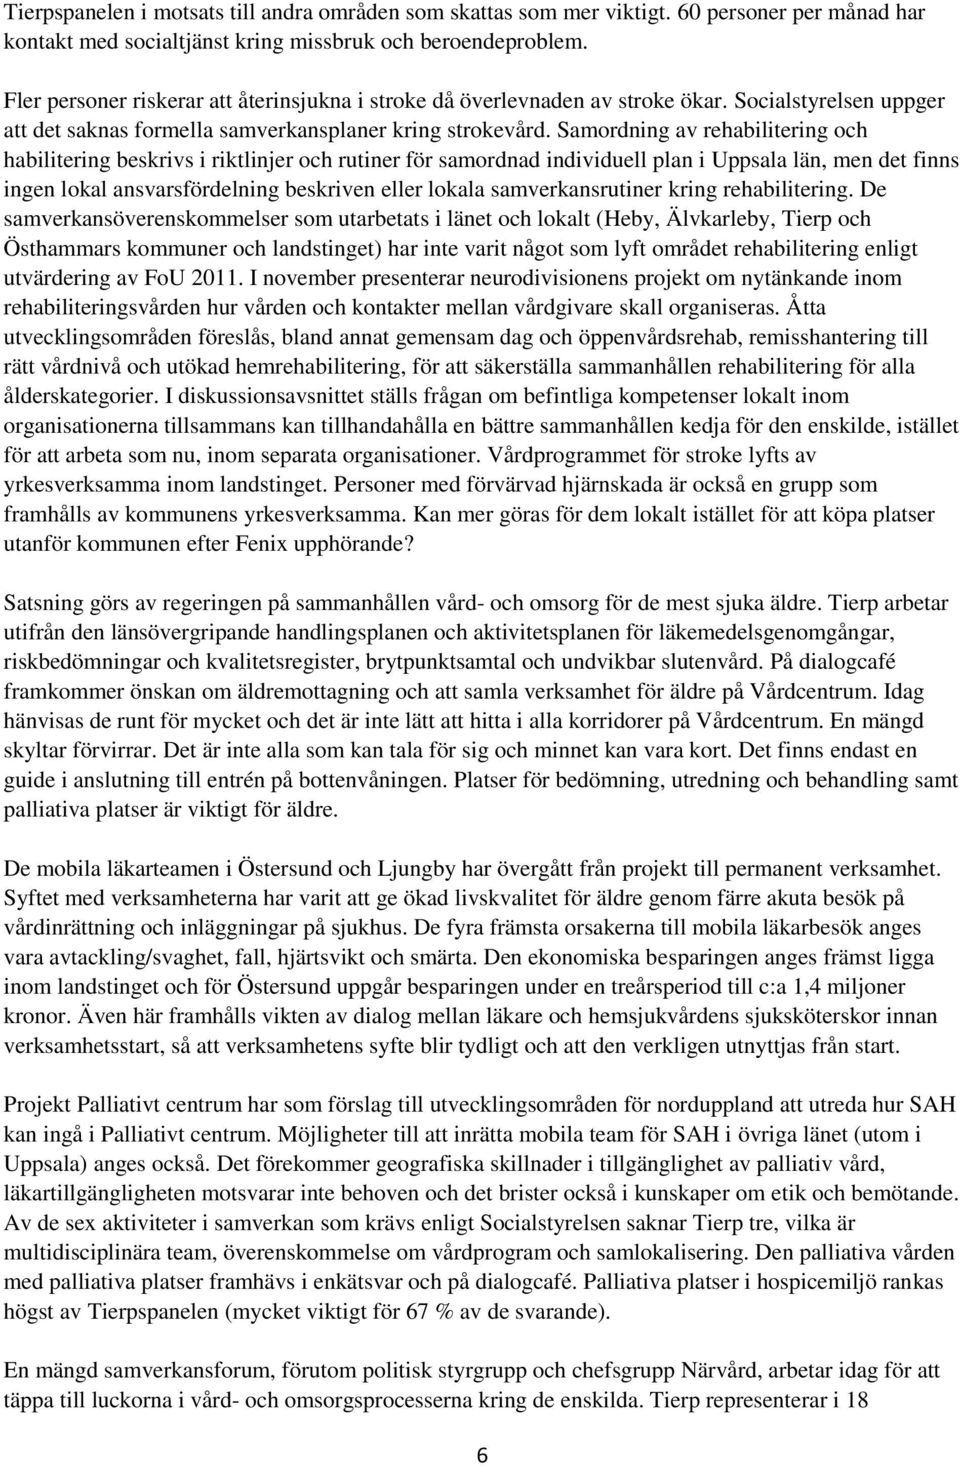 Samordning av rehabilitering och habilitering beskrivs i riktlinjer och rutiner för samordnad individuell plan i Uppsala län, men det finns ingen lokal ansvarsfördelning beskriven eller lokala